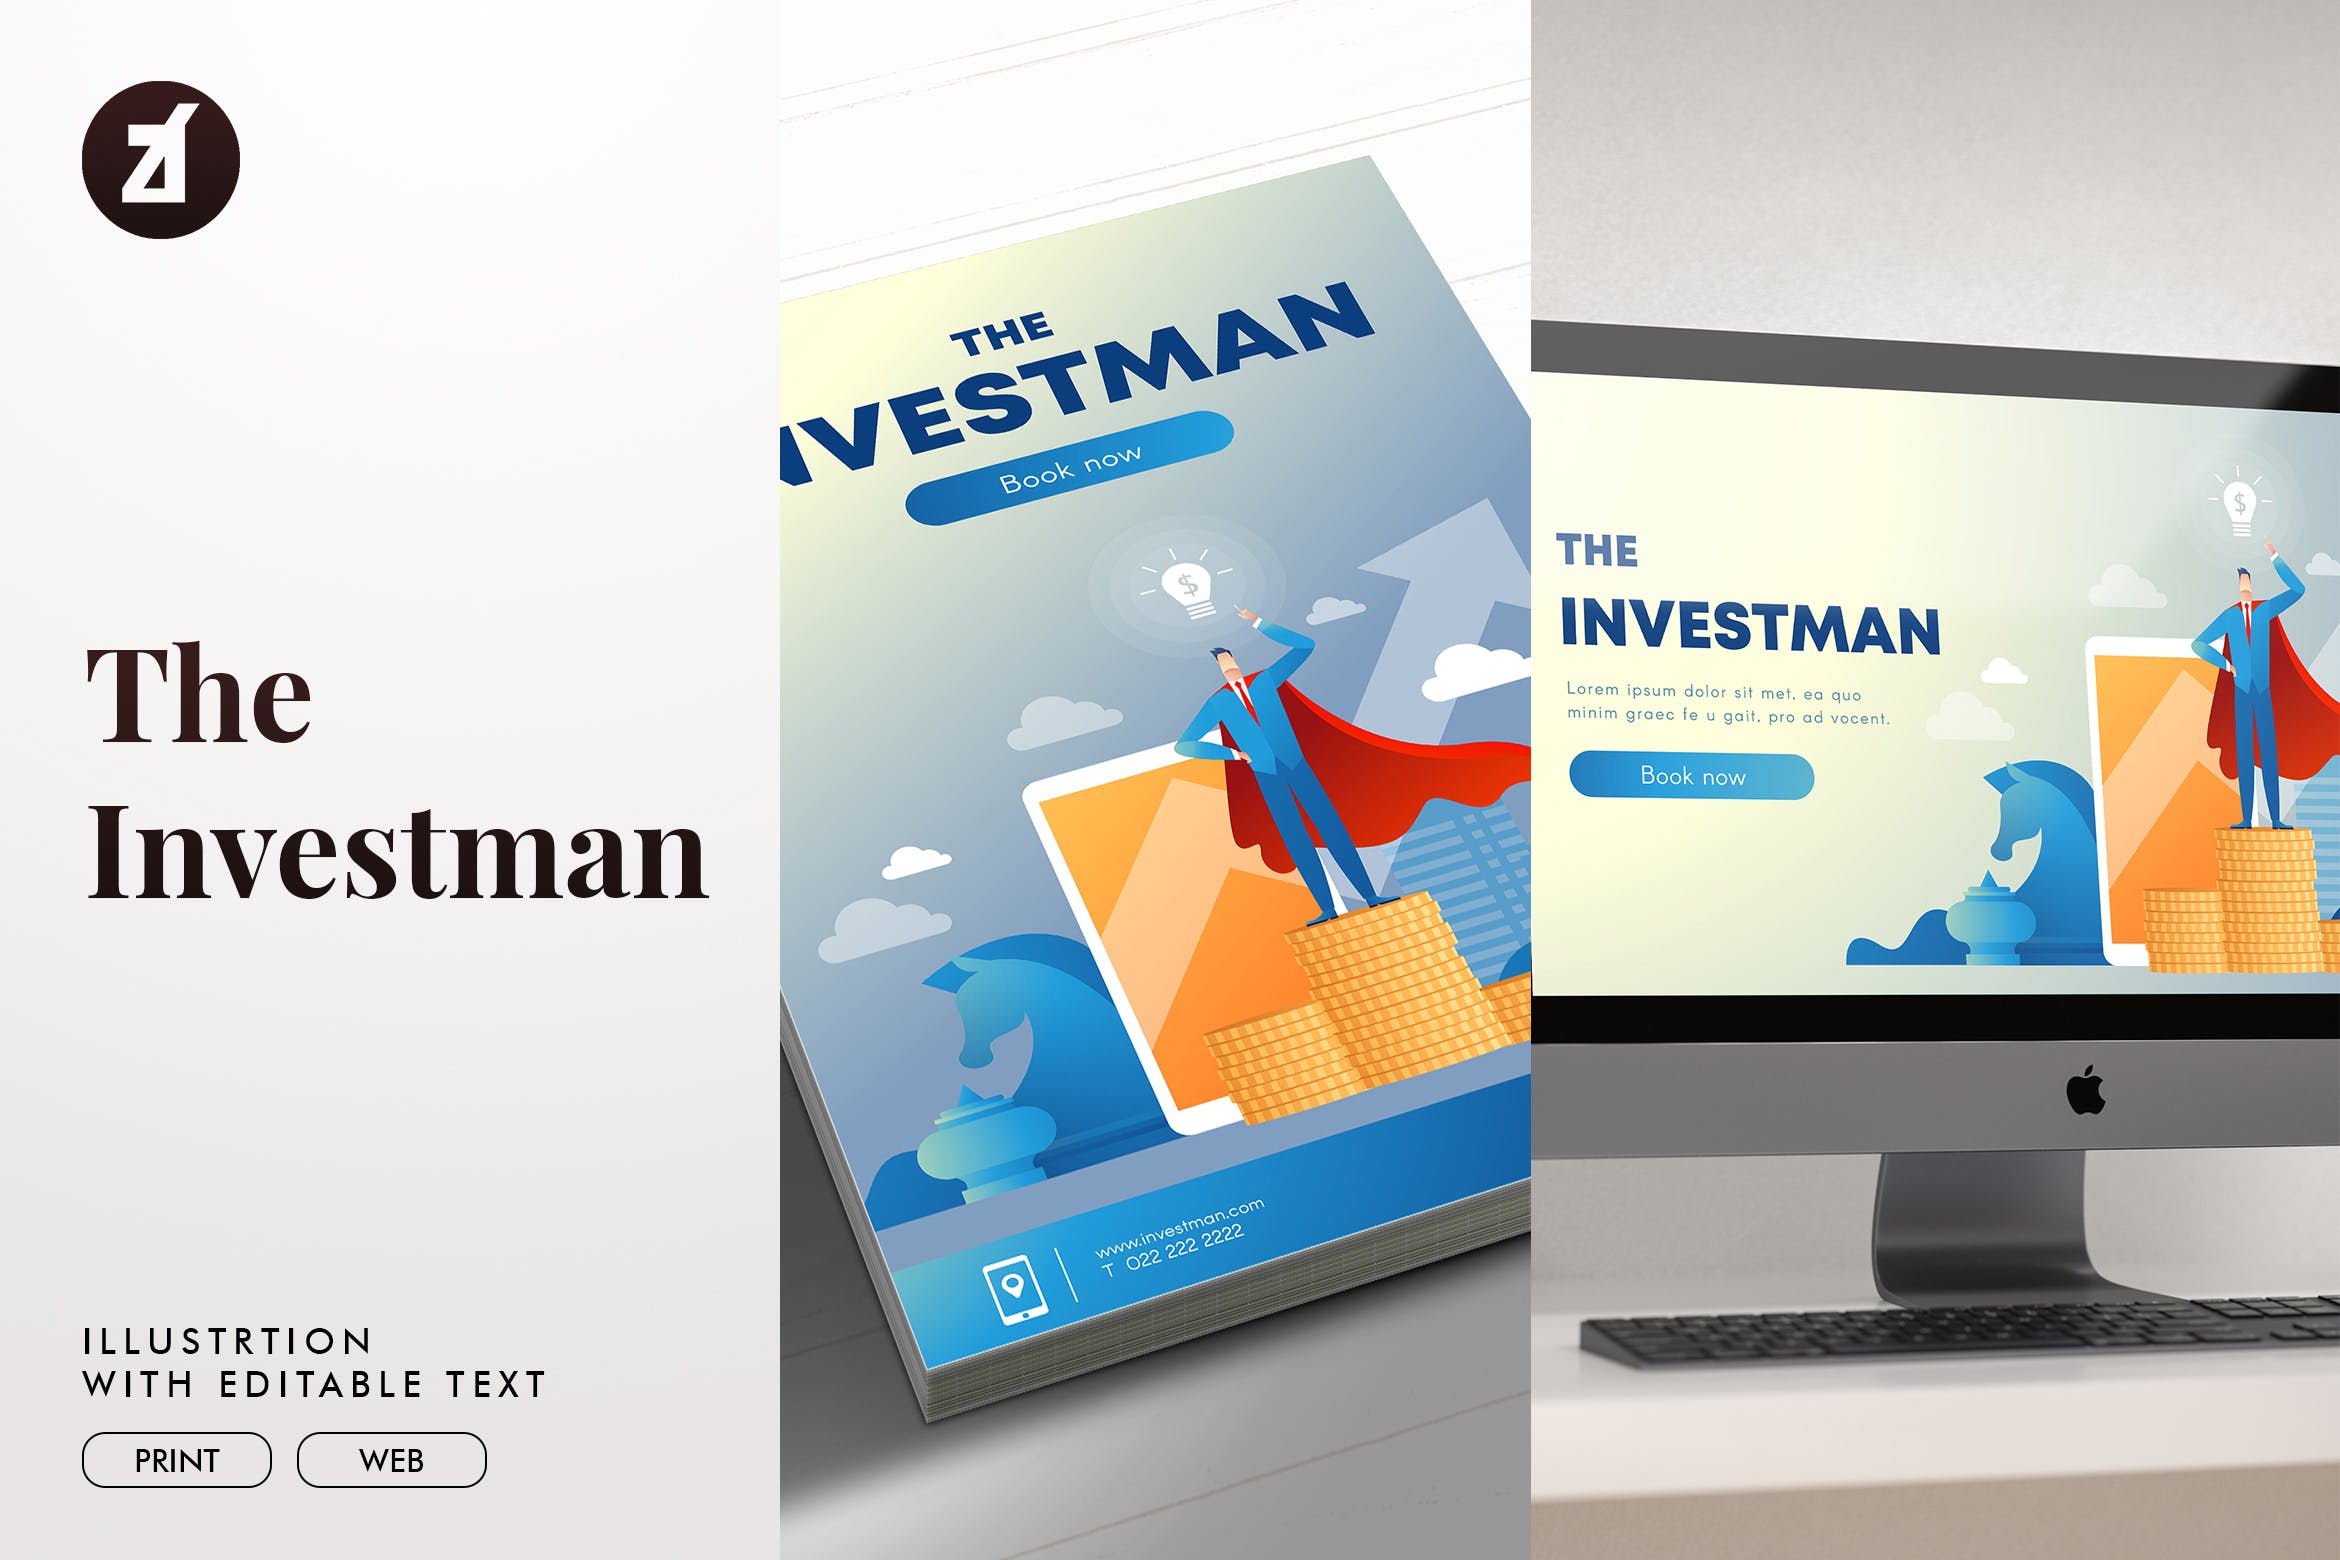 投资者主题矢量素材库精选概念插画素材 The investman illustration with text layout插图